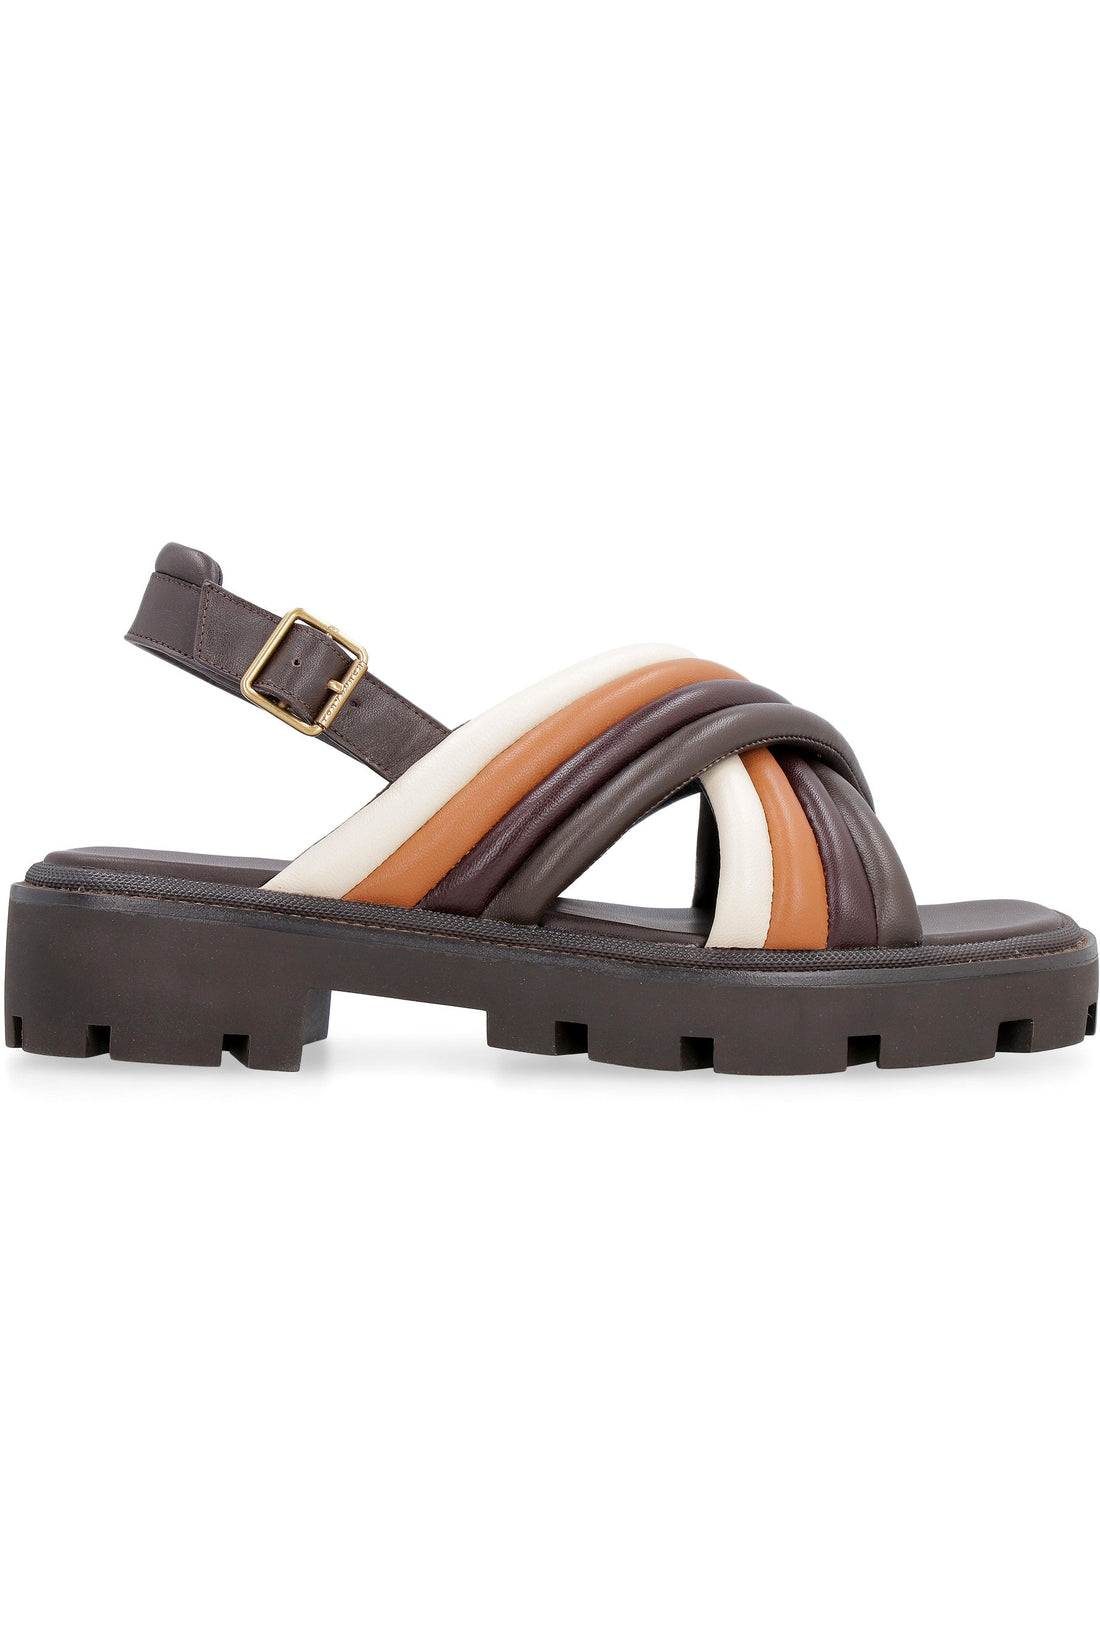 Tory Burch-OUTLET-SALE-Leather platform sandals-ARCHIVIST